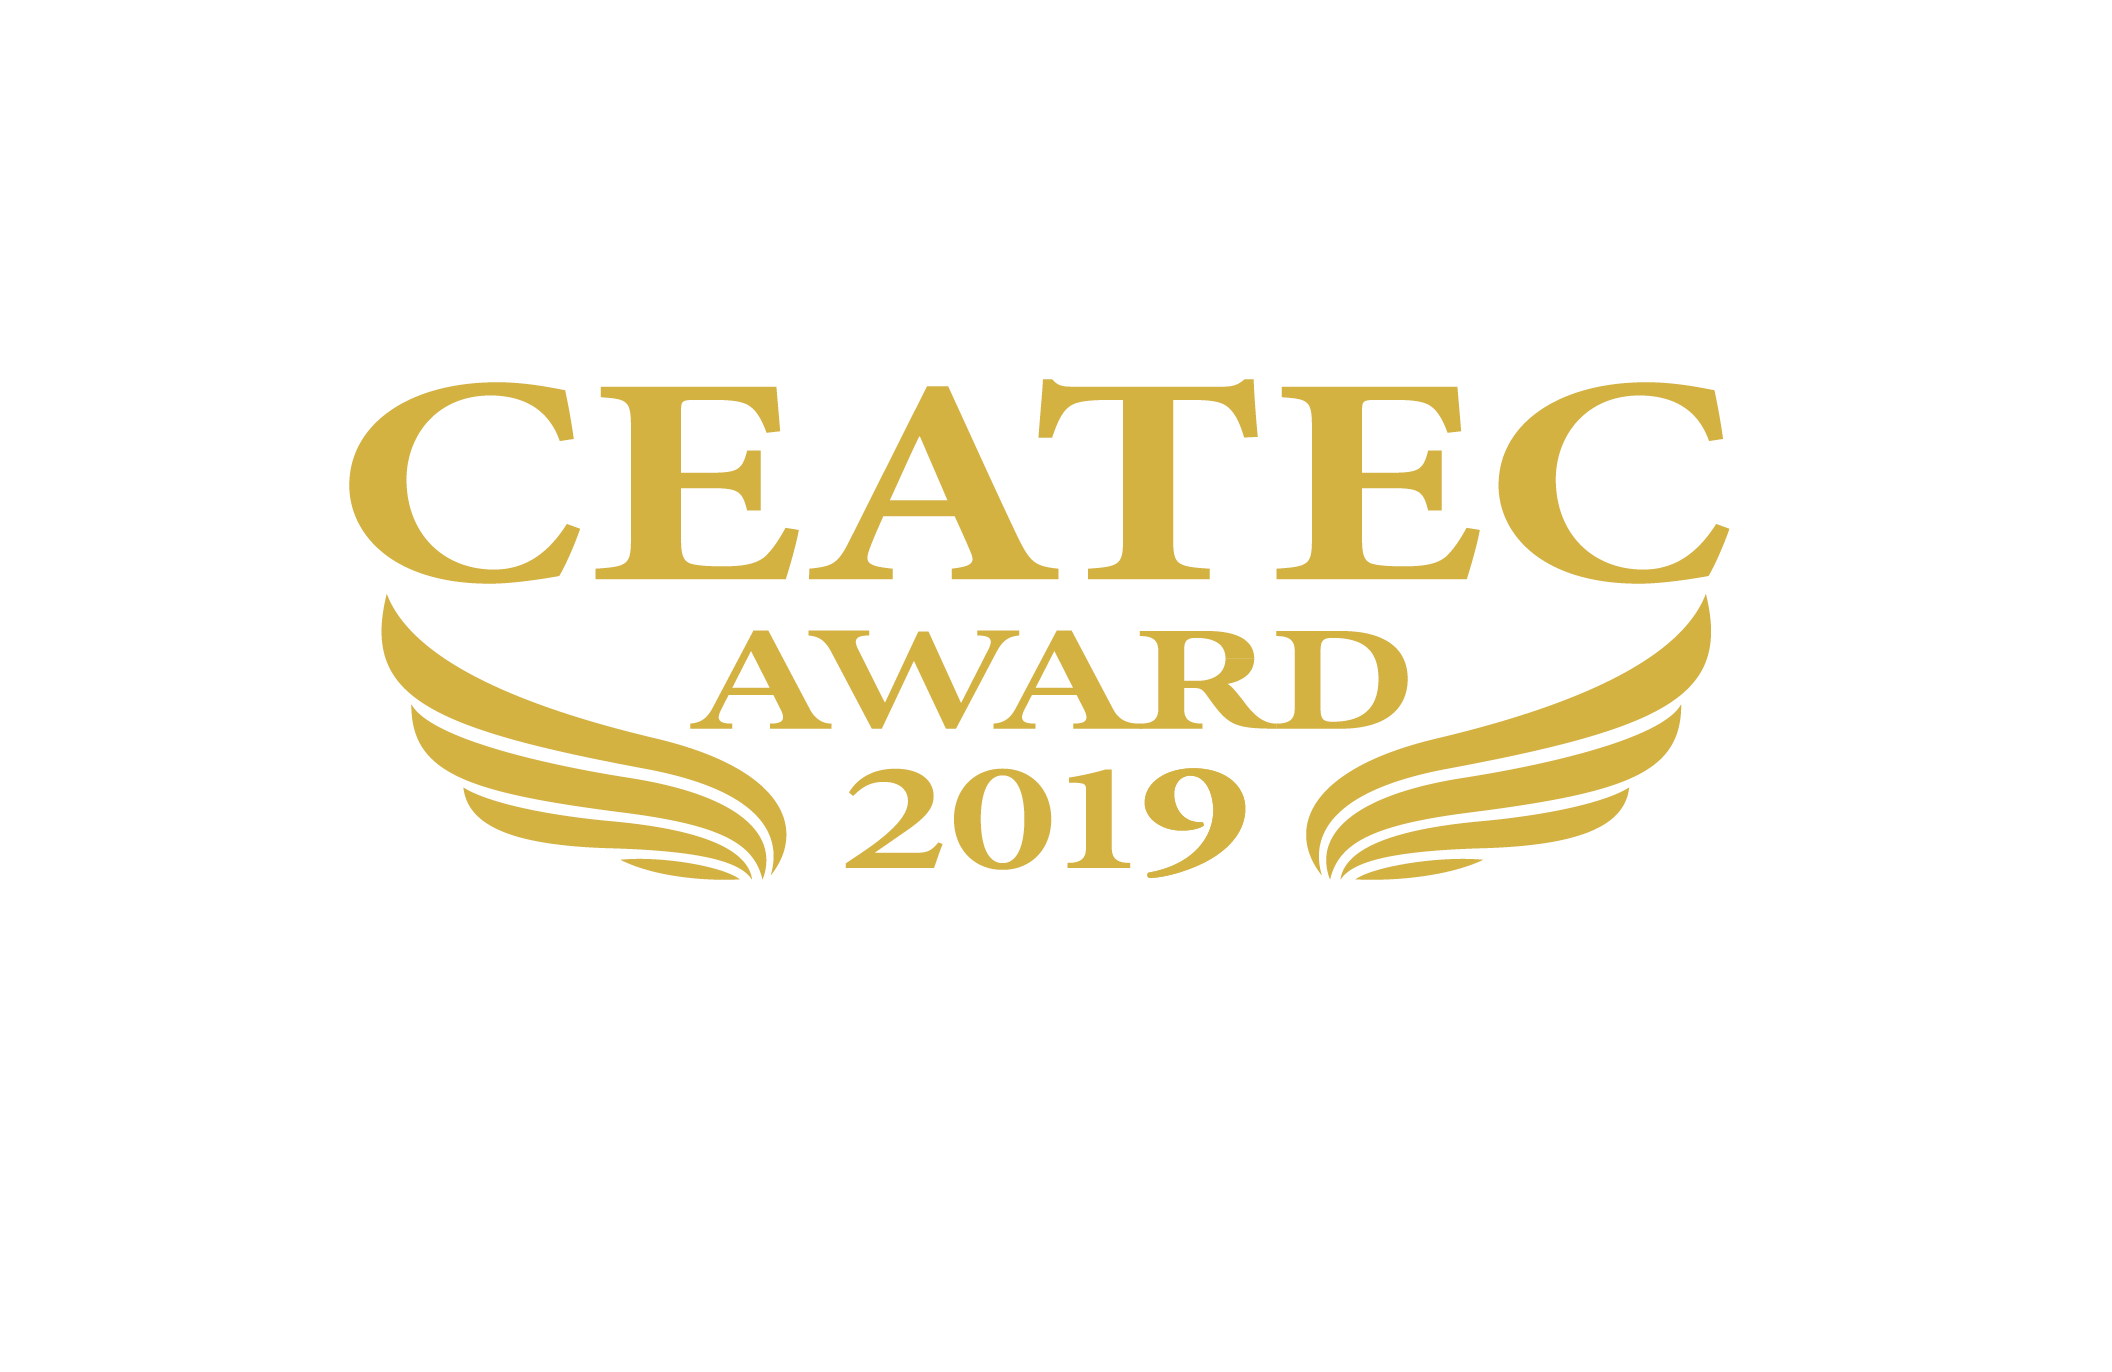 CEATEC AWARD 2019で“トータルソリューション部門 グランプリ”を受賞いたしました